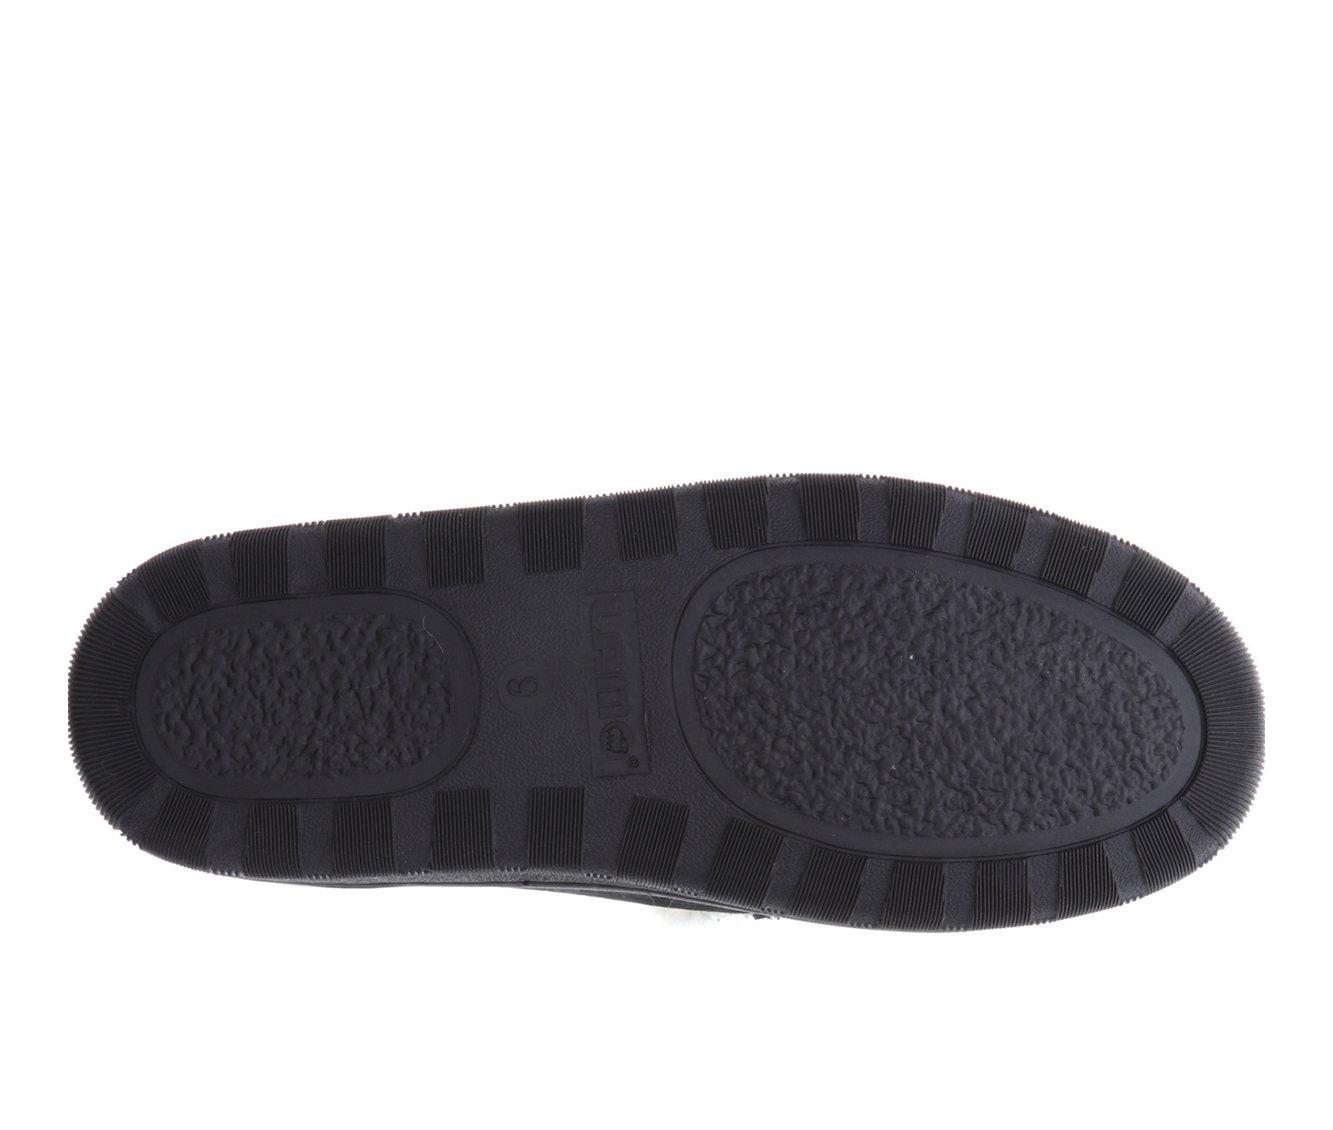 Lamo Footwear Harrison Moccasin Slippers